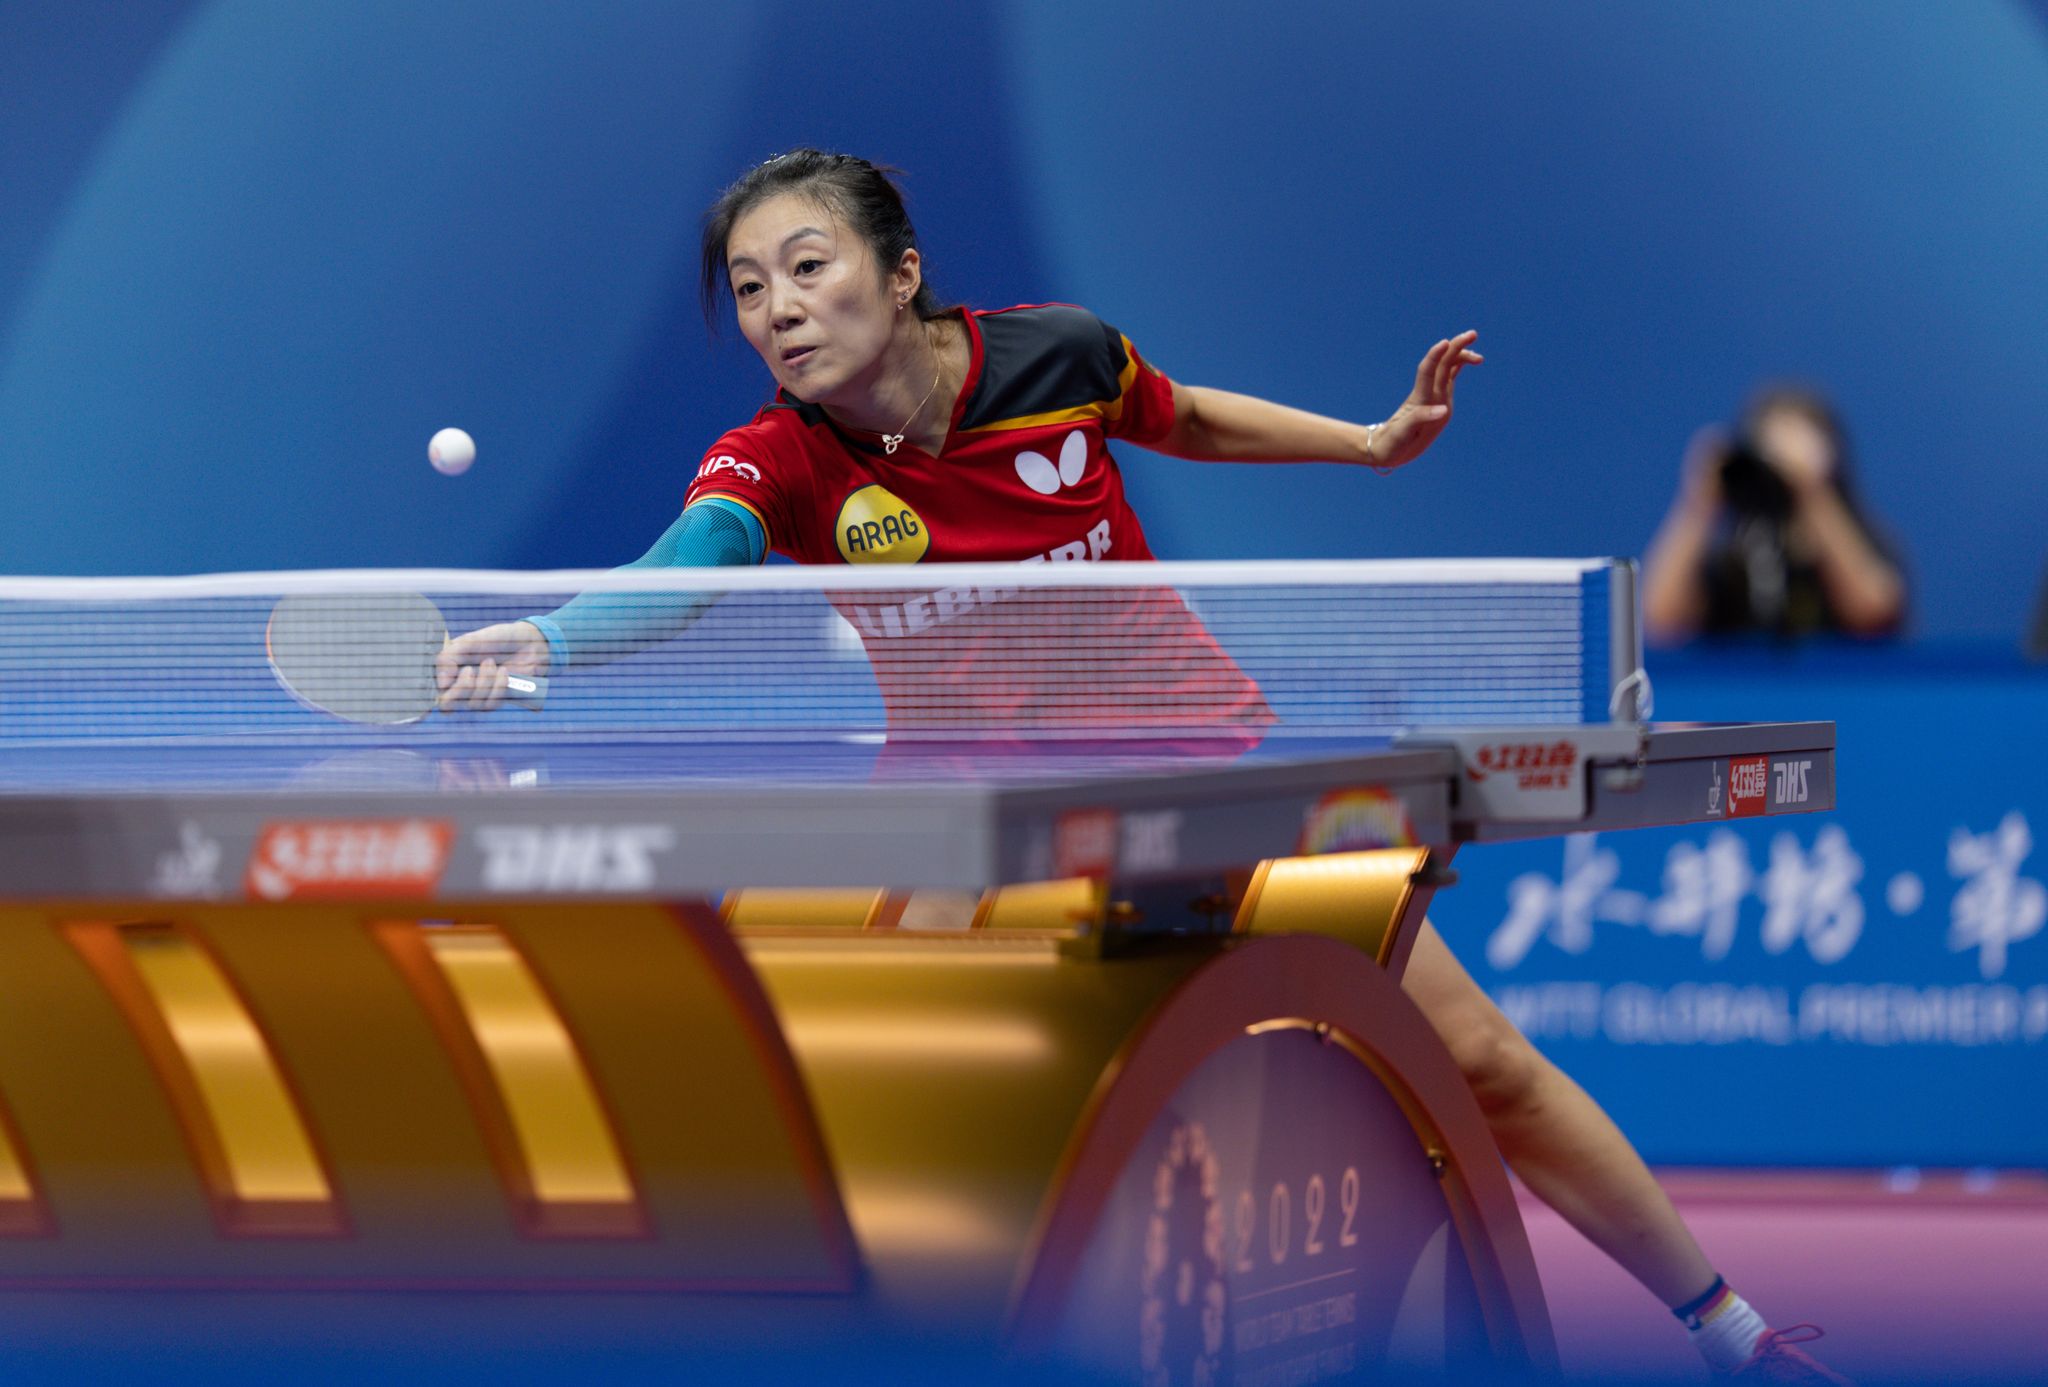 Tischtennis-Nationalspielerin Ying Han erreichte in Singapur das Viertelfinale.